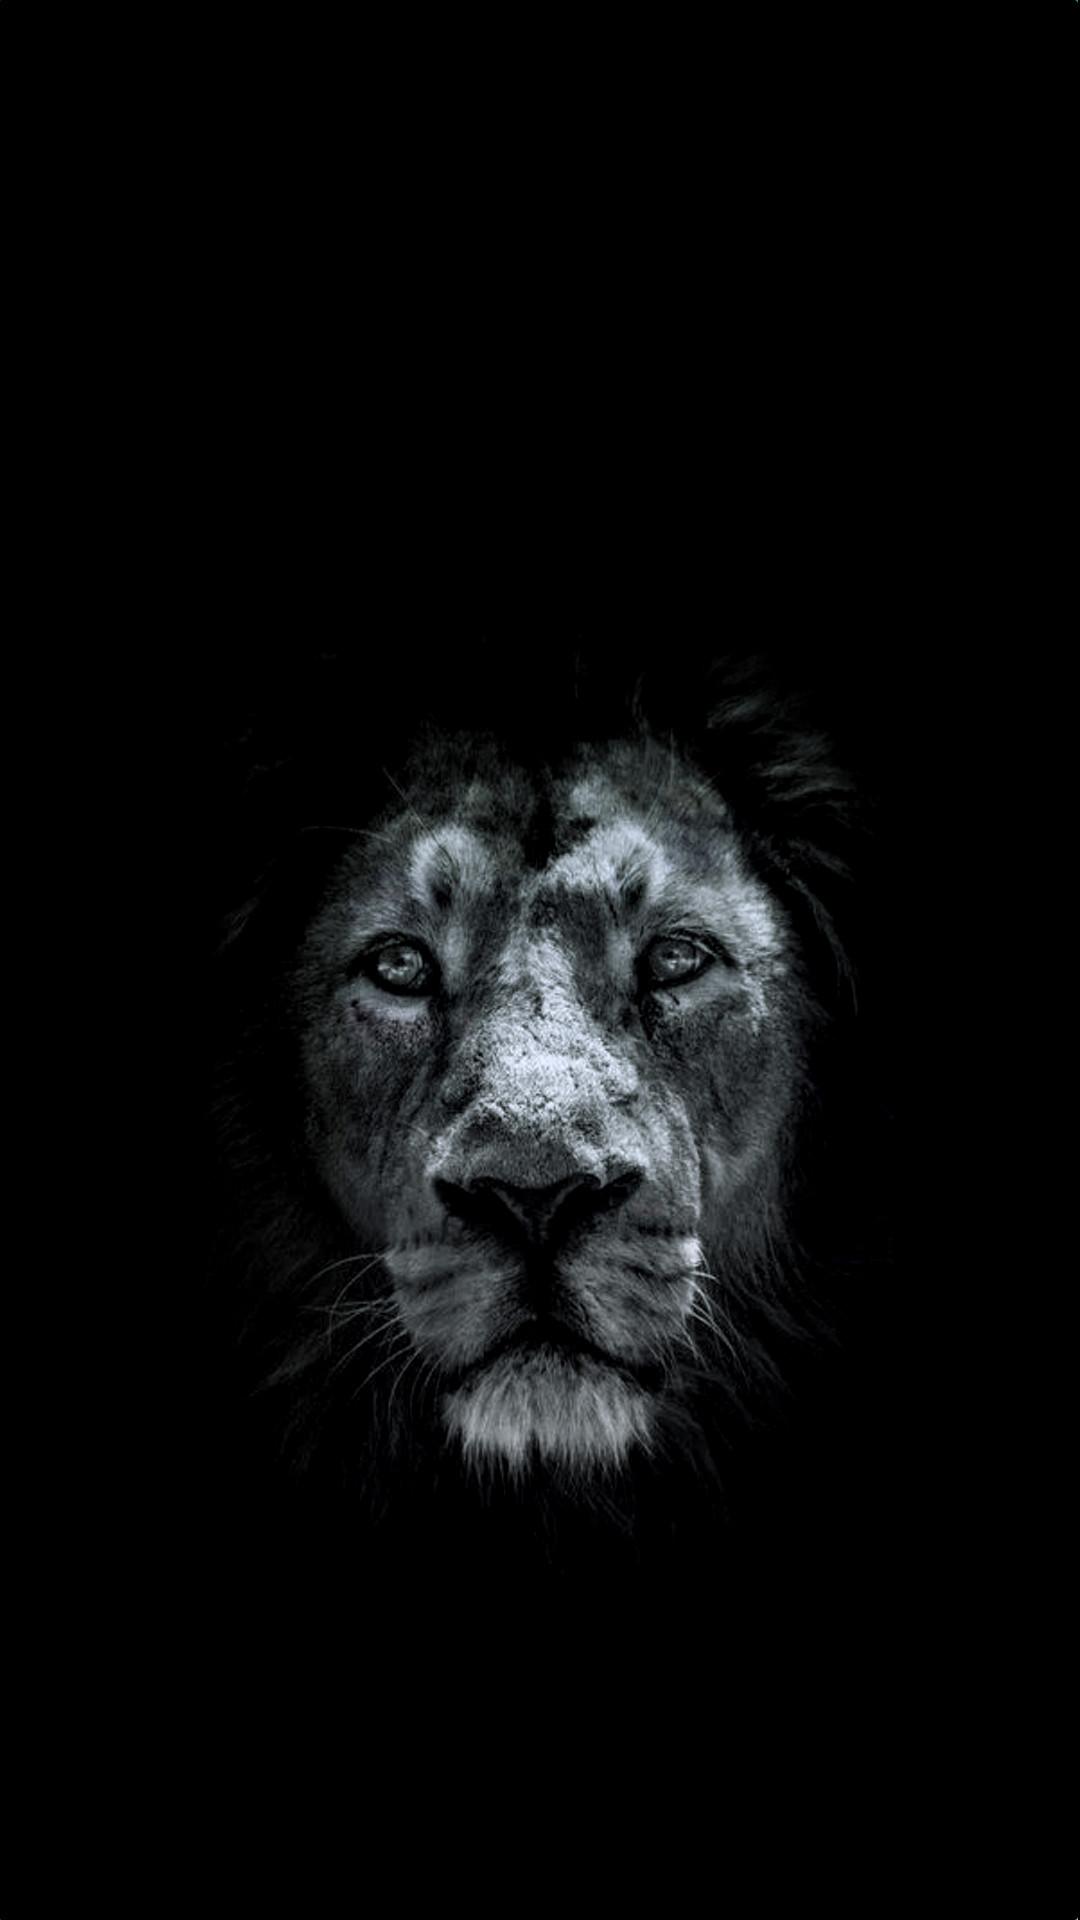 Black Lion Wallpapers - Top Những Hình Ảnh Đẹp